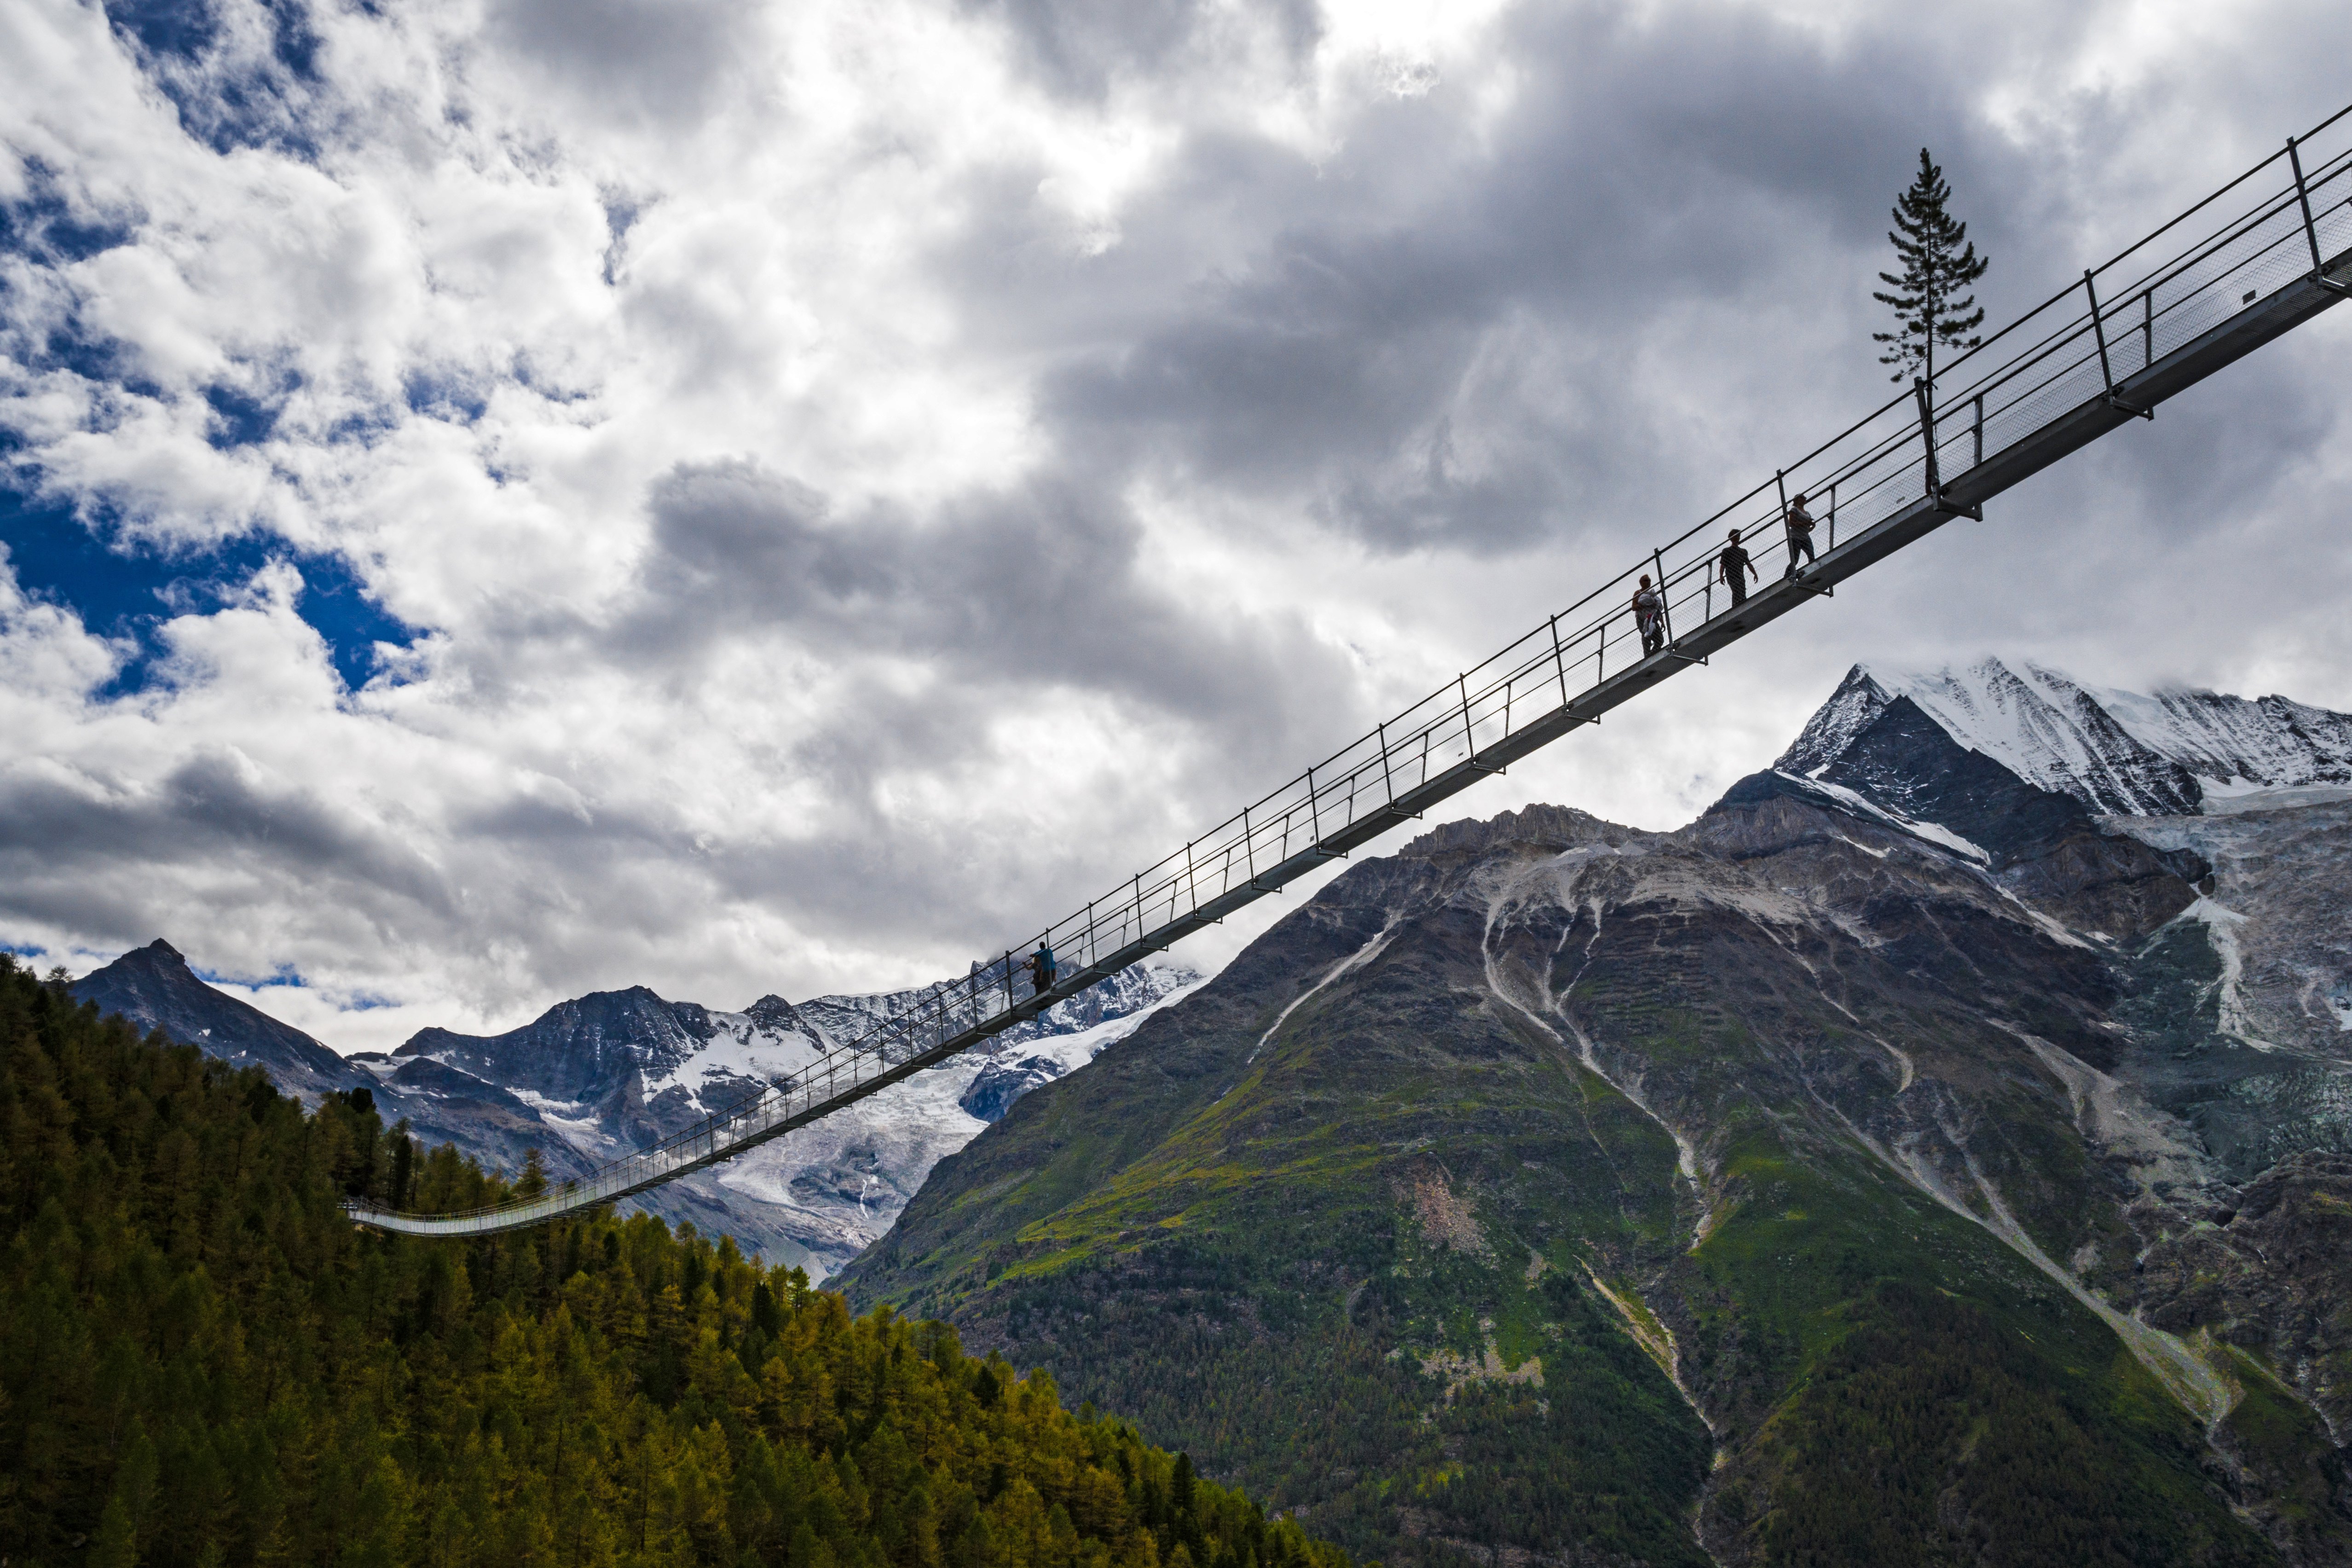 Мостът "Европа" - най-дългият висящ мост в света. Съоръжението има дължина 494м. и се намира в близост до швейцарското градче Зермат.